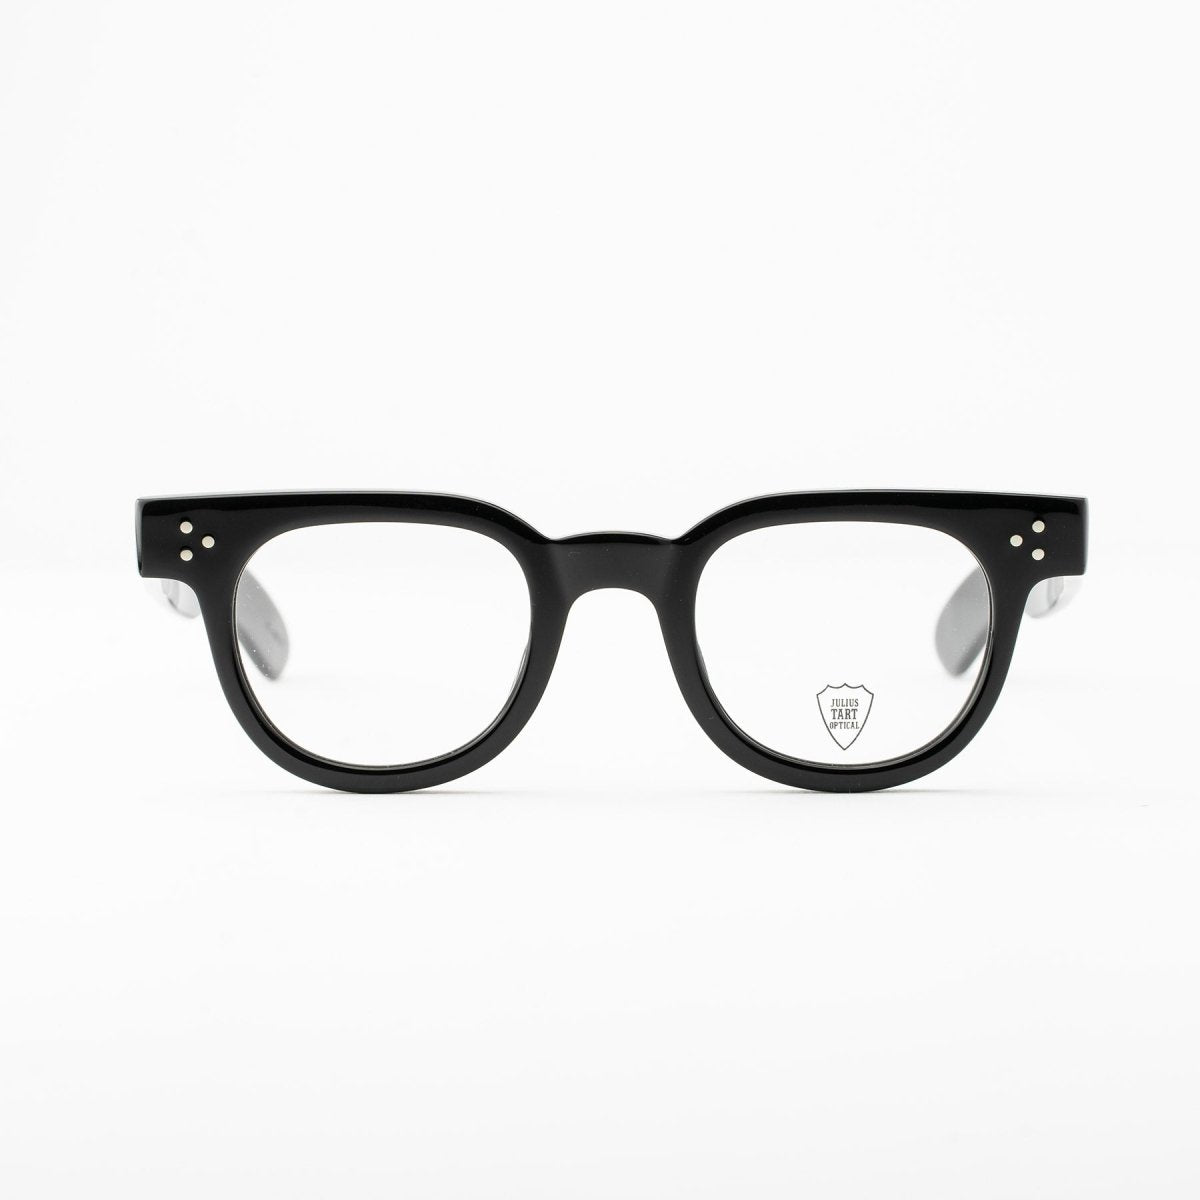 Optical Fdr, Julius Tart eyeglasses